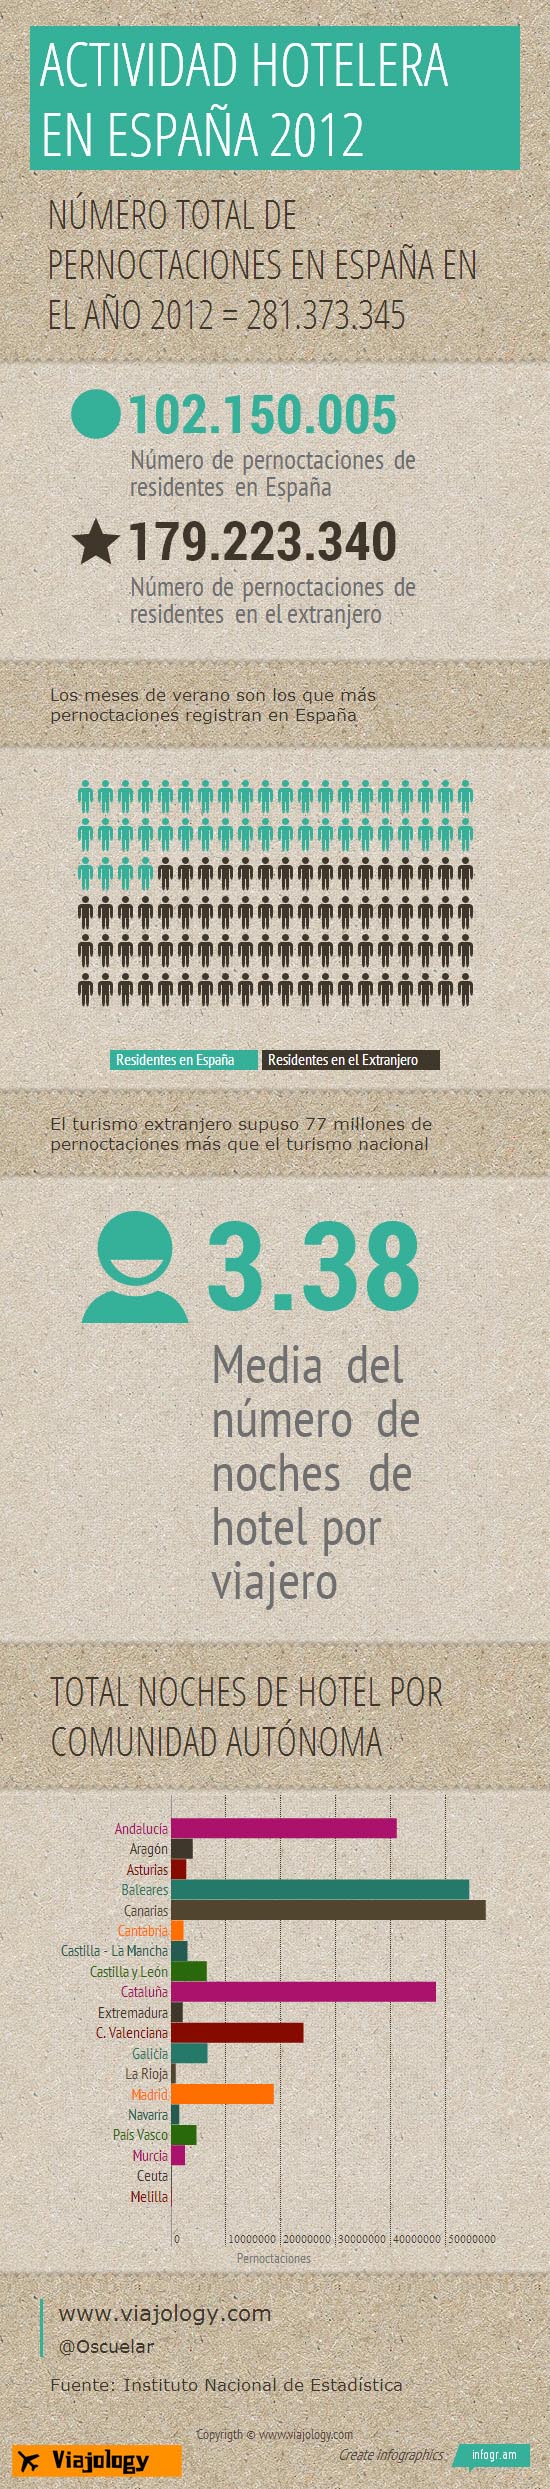 Infografia Actividad hotelera en España en 2012